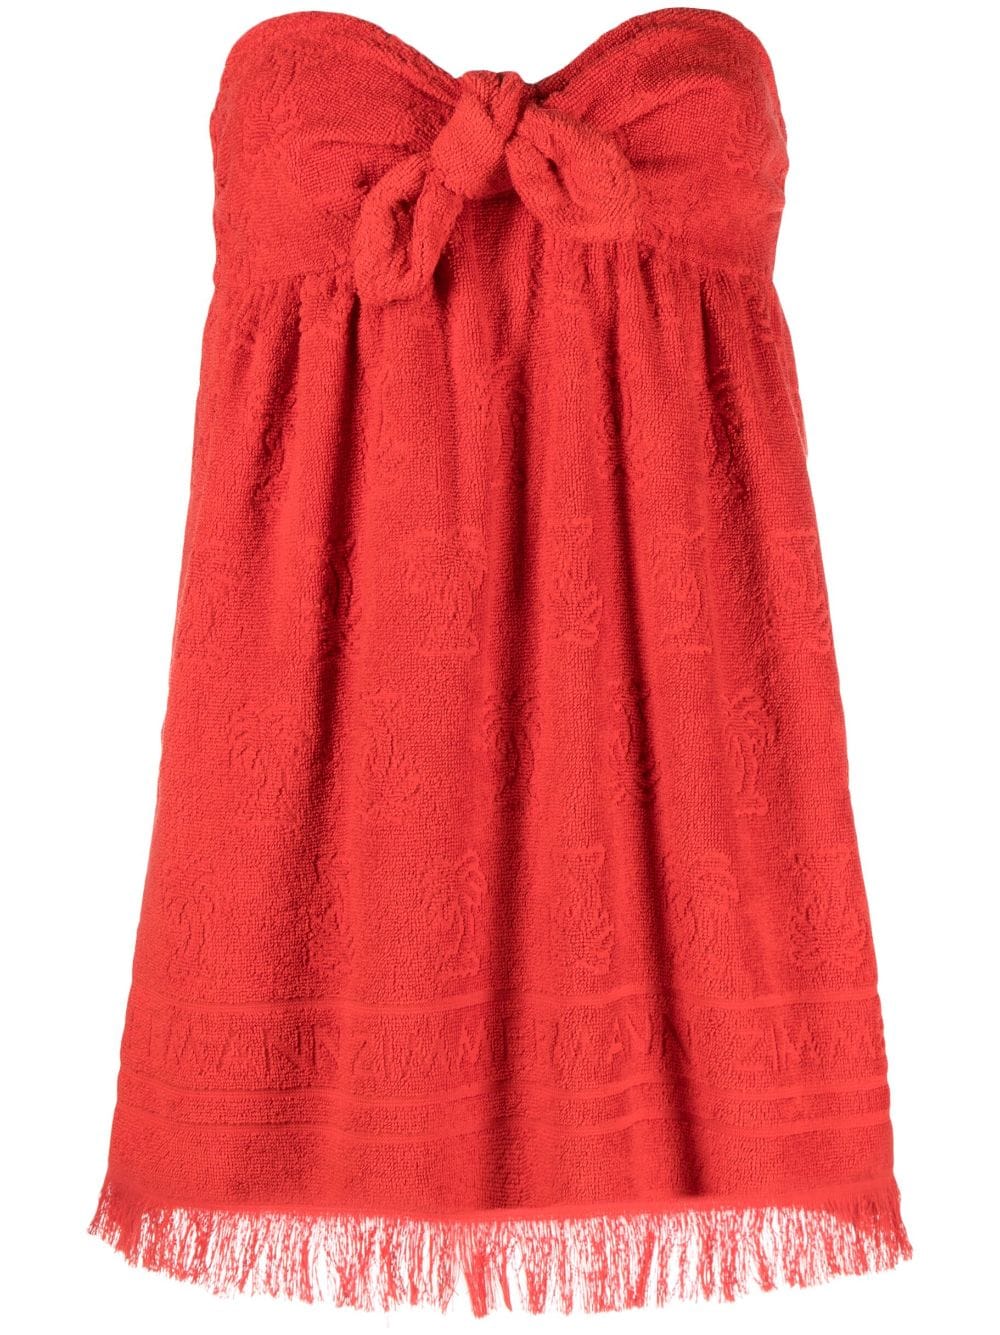 亮麗紅色棉紗迷你洋裝-燙印棕櫚樹圖案和徽標邊條細節